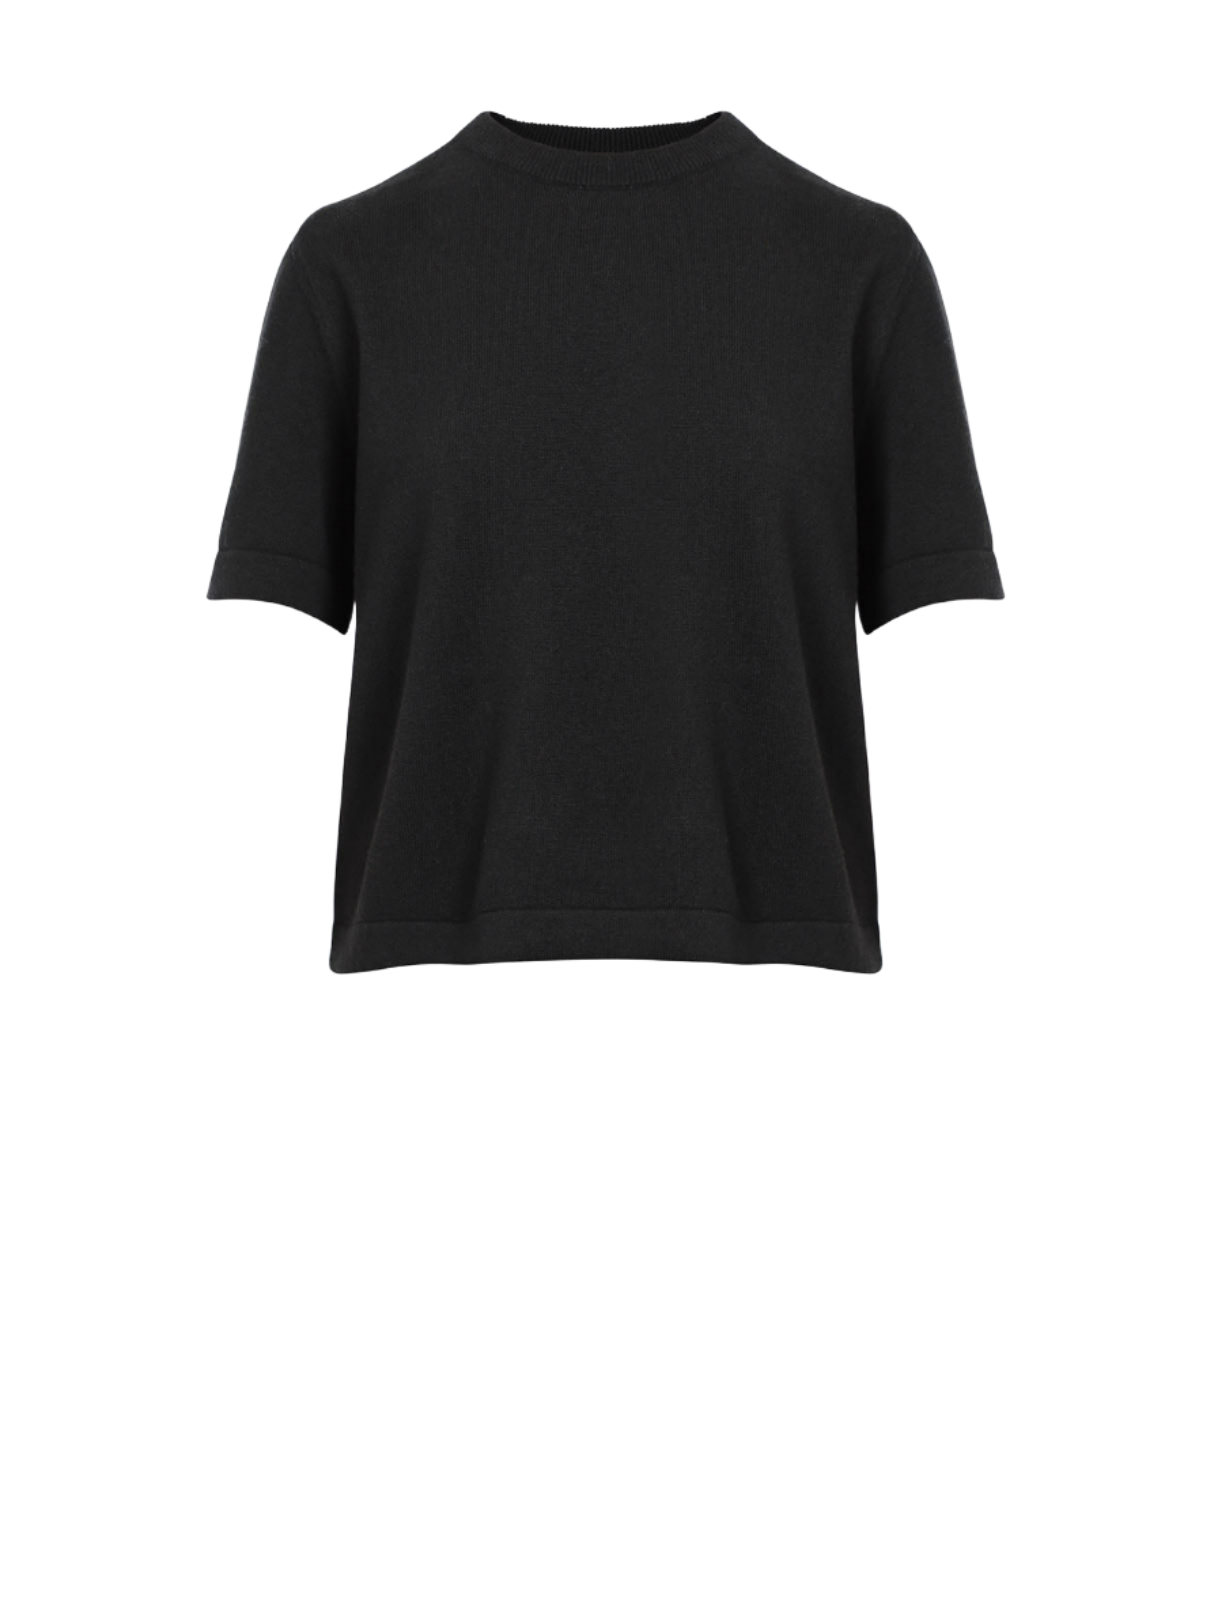 Merino Wool T-Shirt